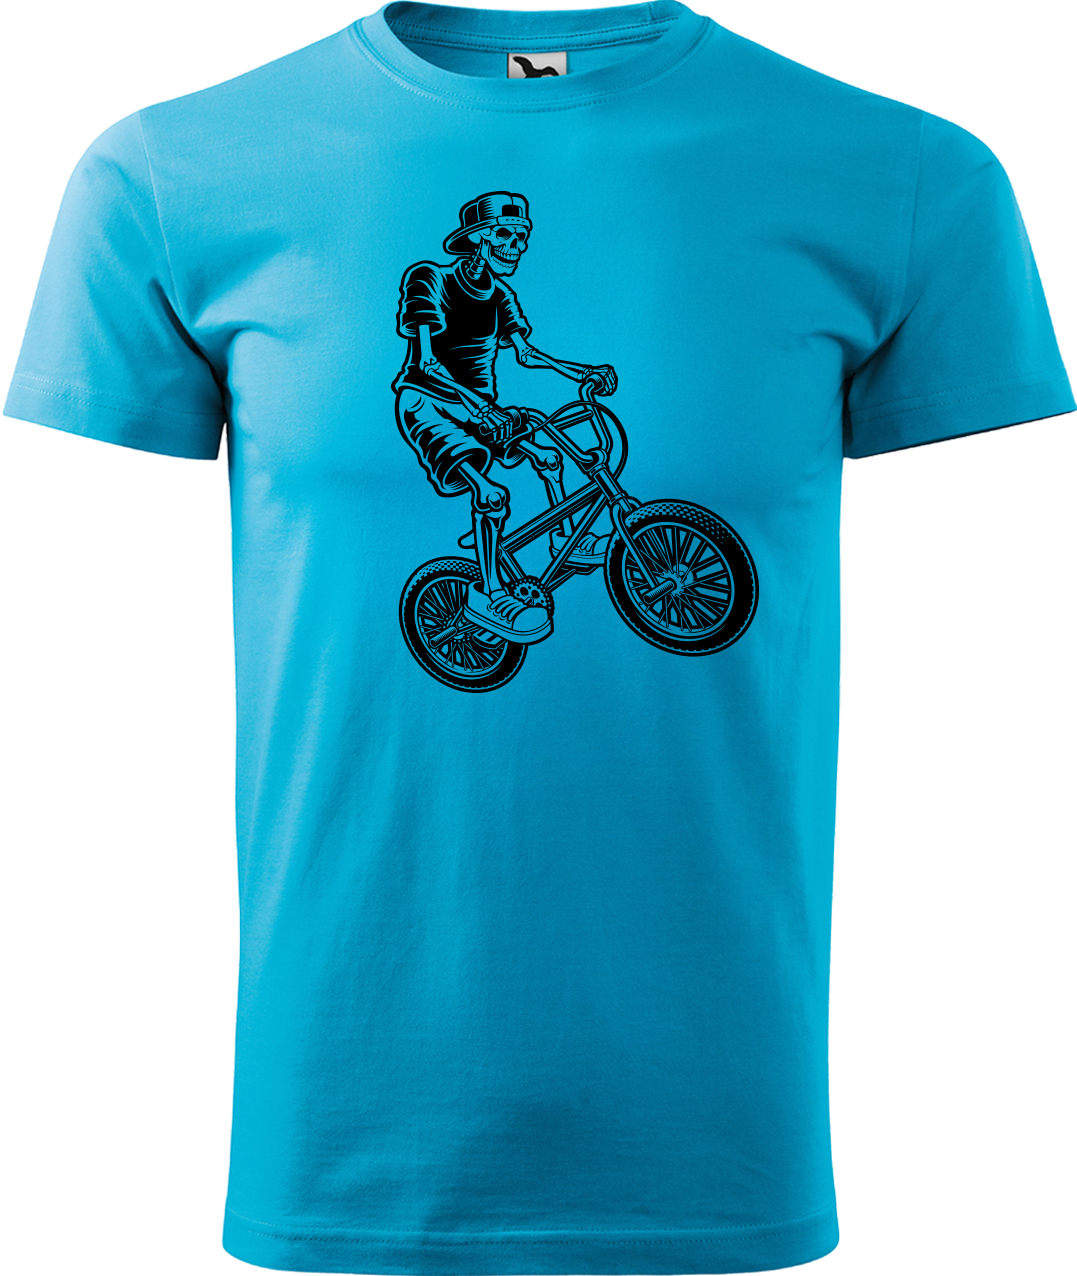 Pánské tričko s kolem - Trial Bike Velikost: 3XL, Barva: Tyrkysová (44)